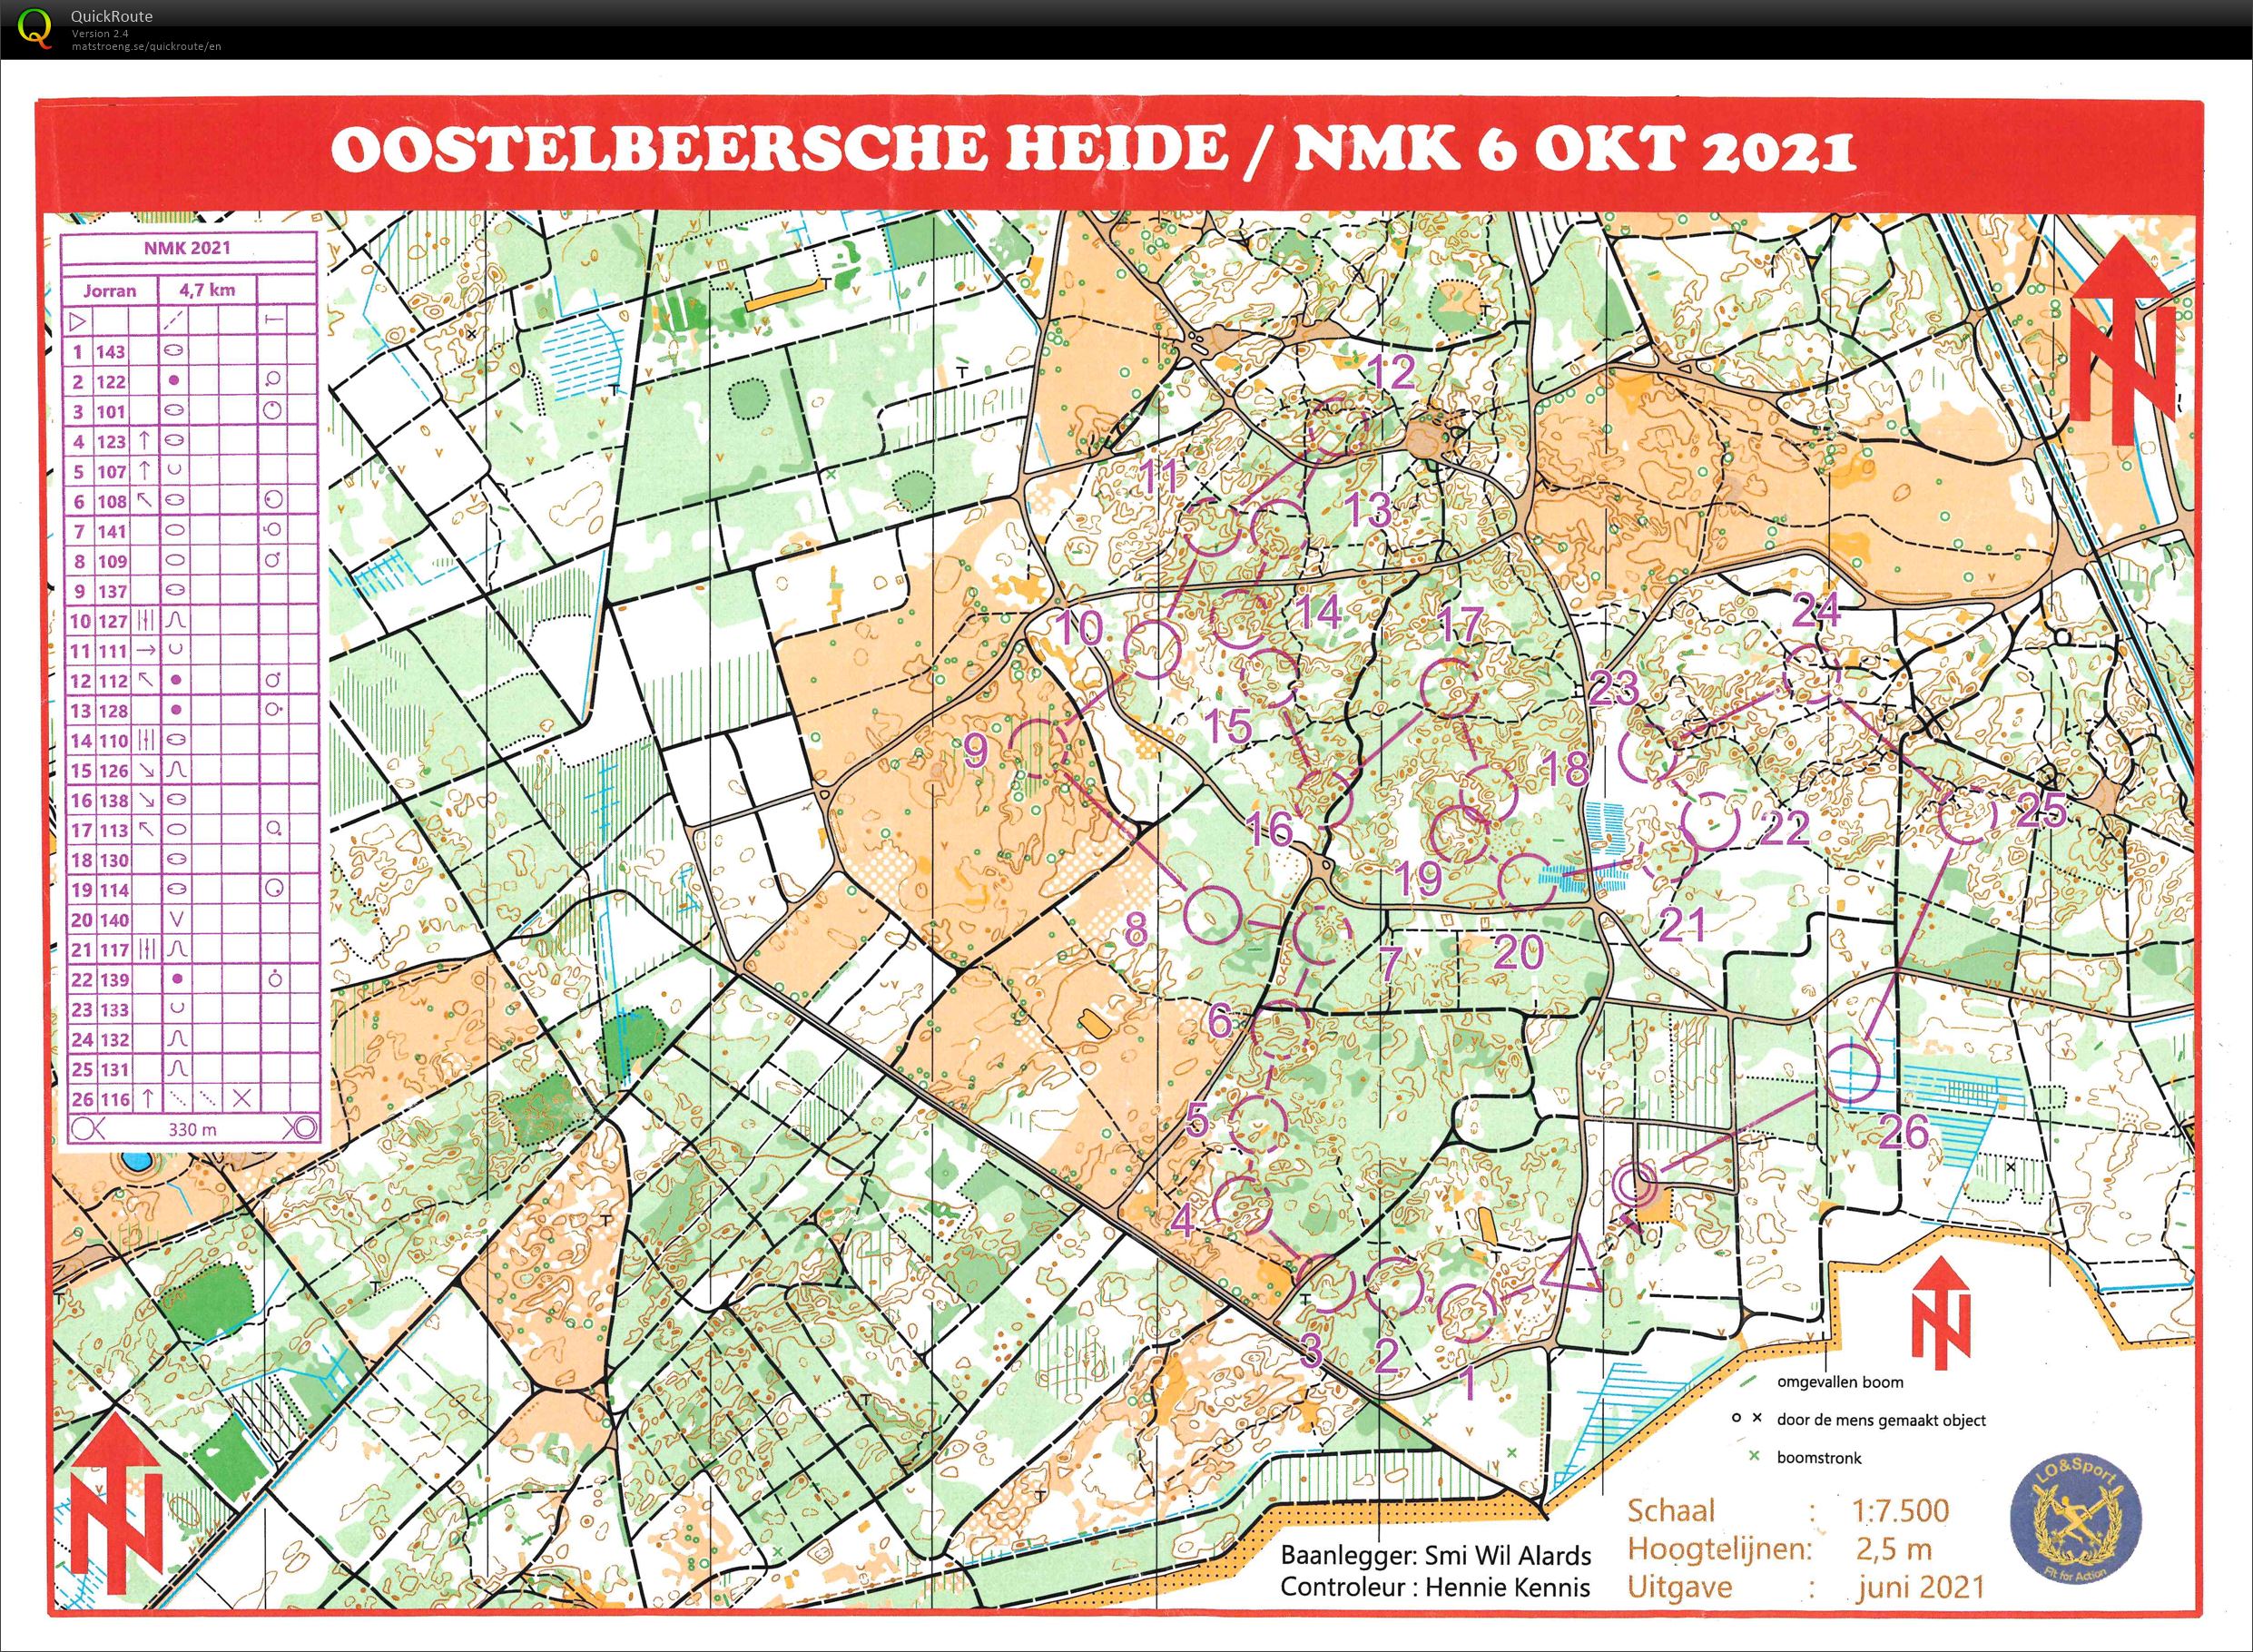 NMK Oostelbeersche Heide (2021-10-06)